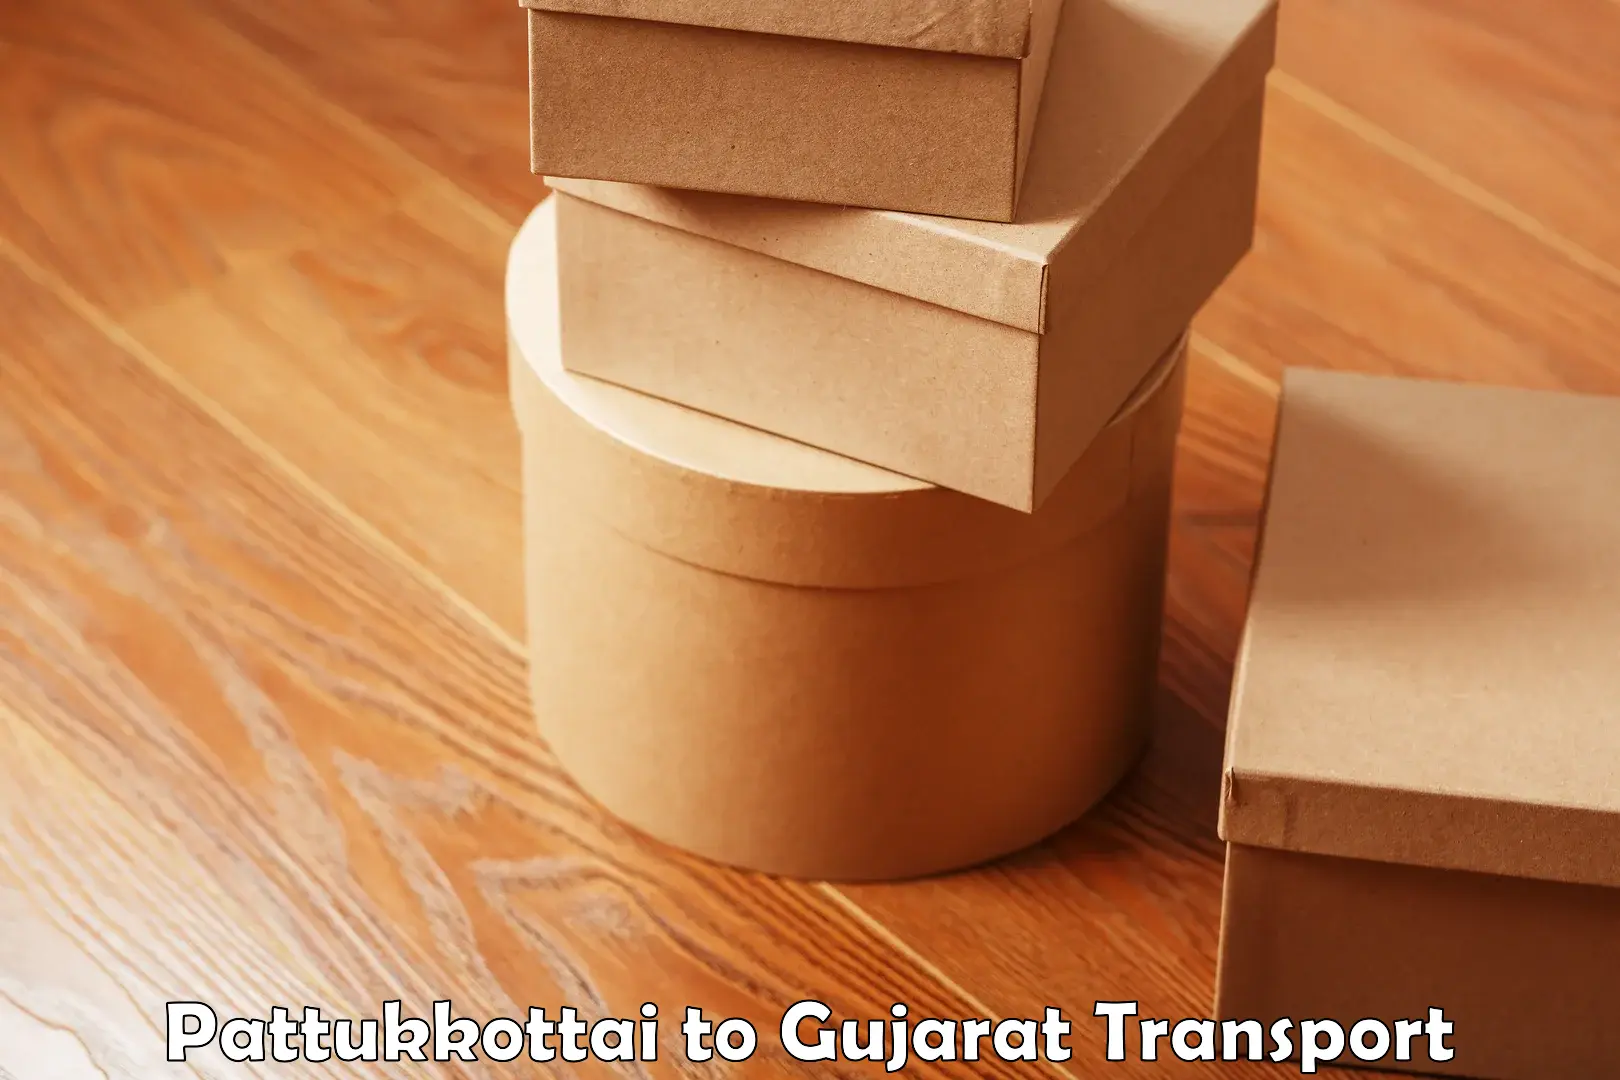 Furniture transport service Pattukkottai to Patan Gujarat